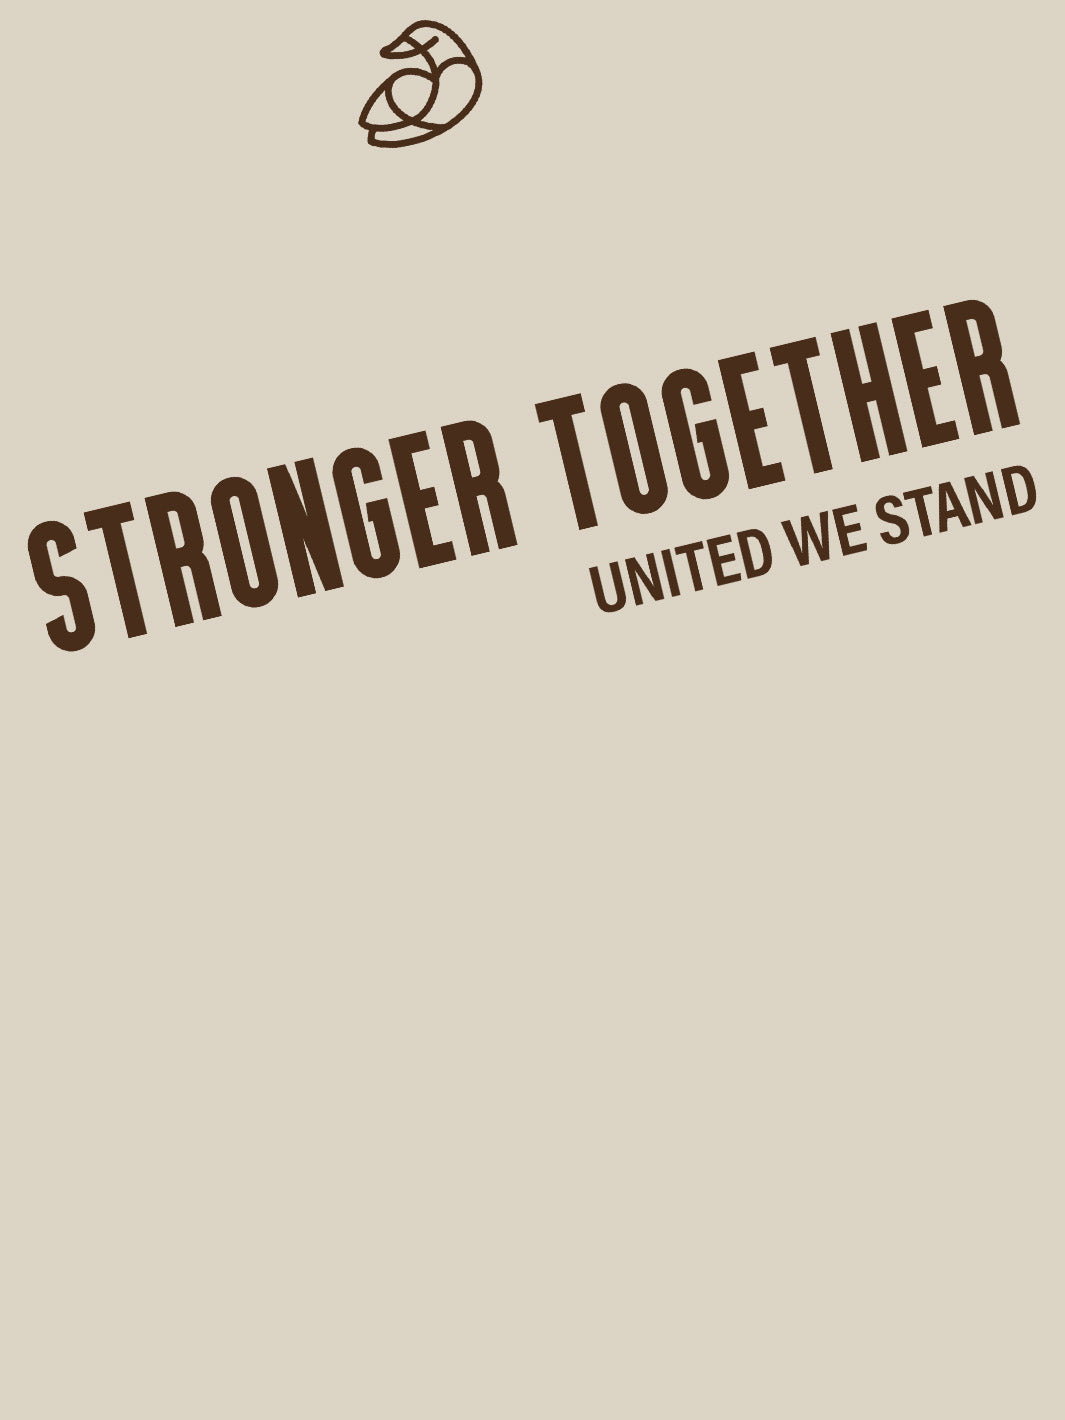 ADOS- Soft Tshirt - Stronger Together